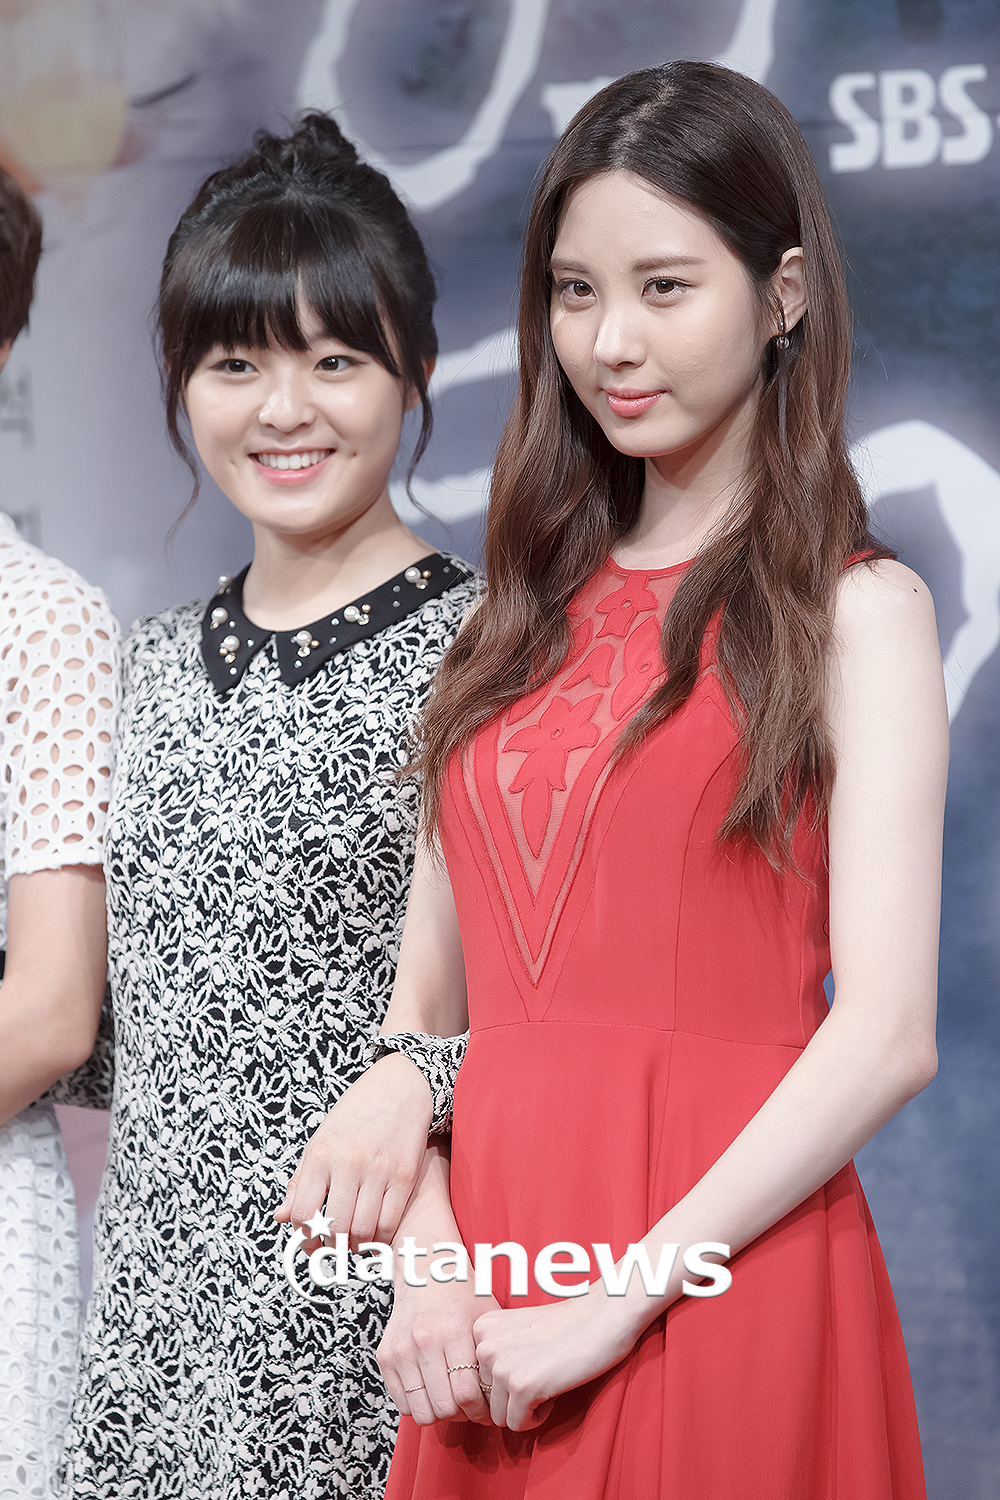 [OTHER][27-08-2013]Hình ảnh mới nhất từ bộ phim "Passionate Love" của SeoHyun - Page 2 2373734A52405F734993B2